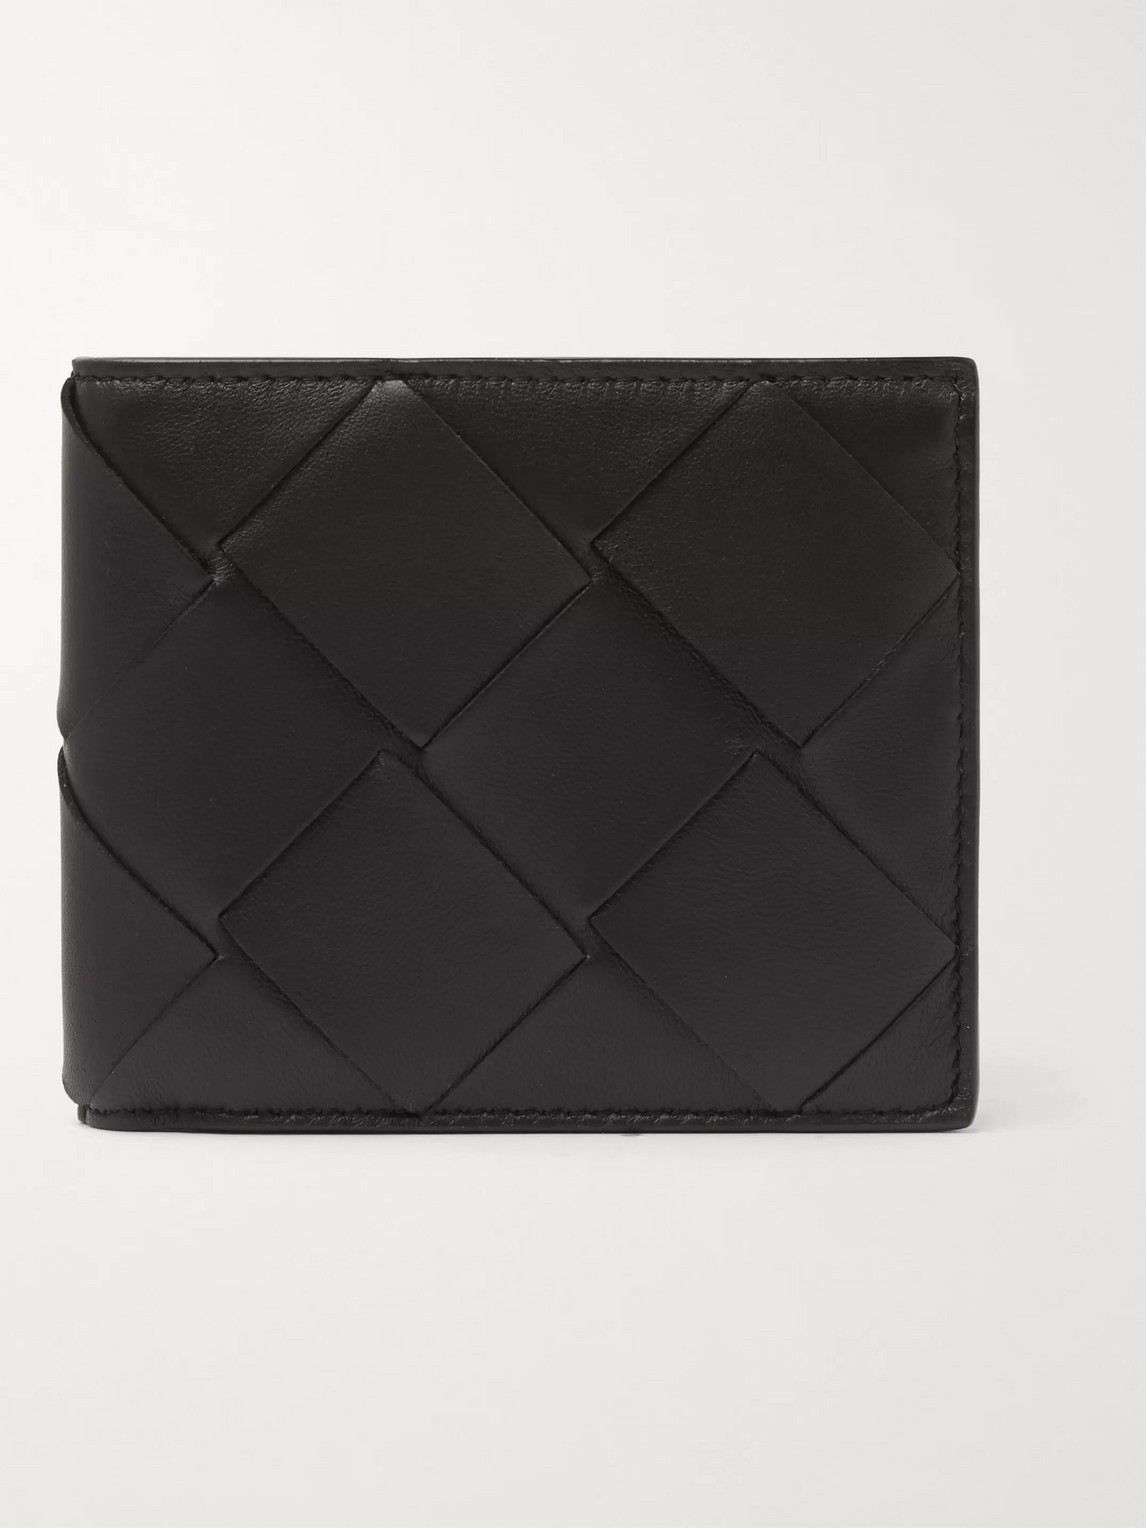 Bottega Veneta Intrecciato Leather Billfold Wallet In Black